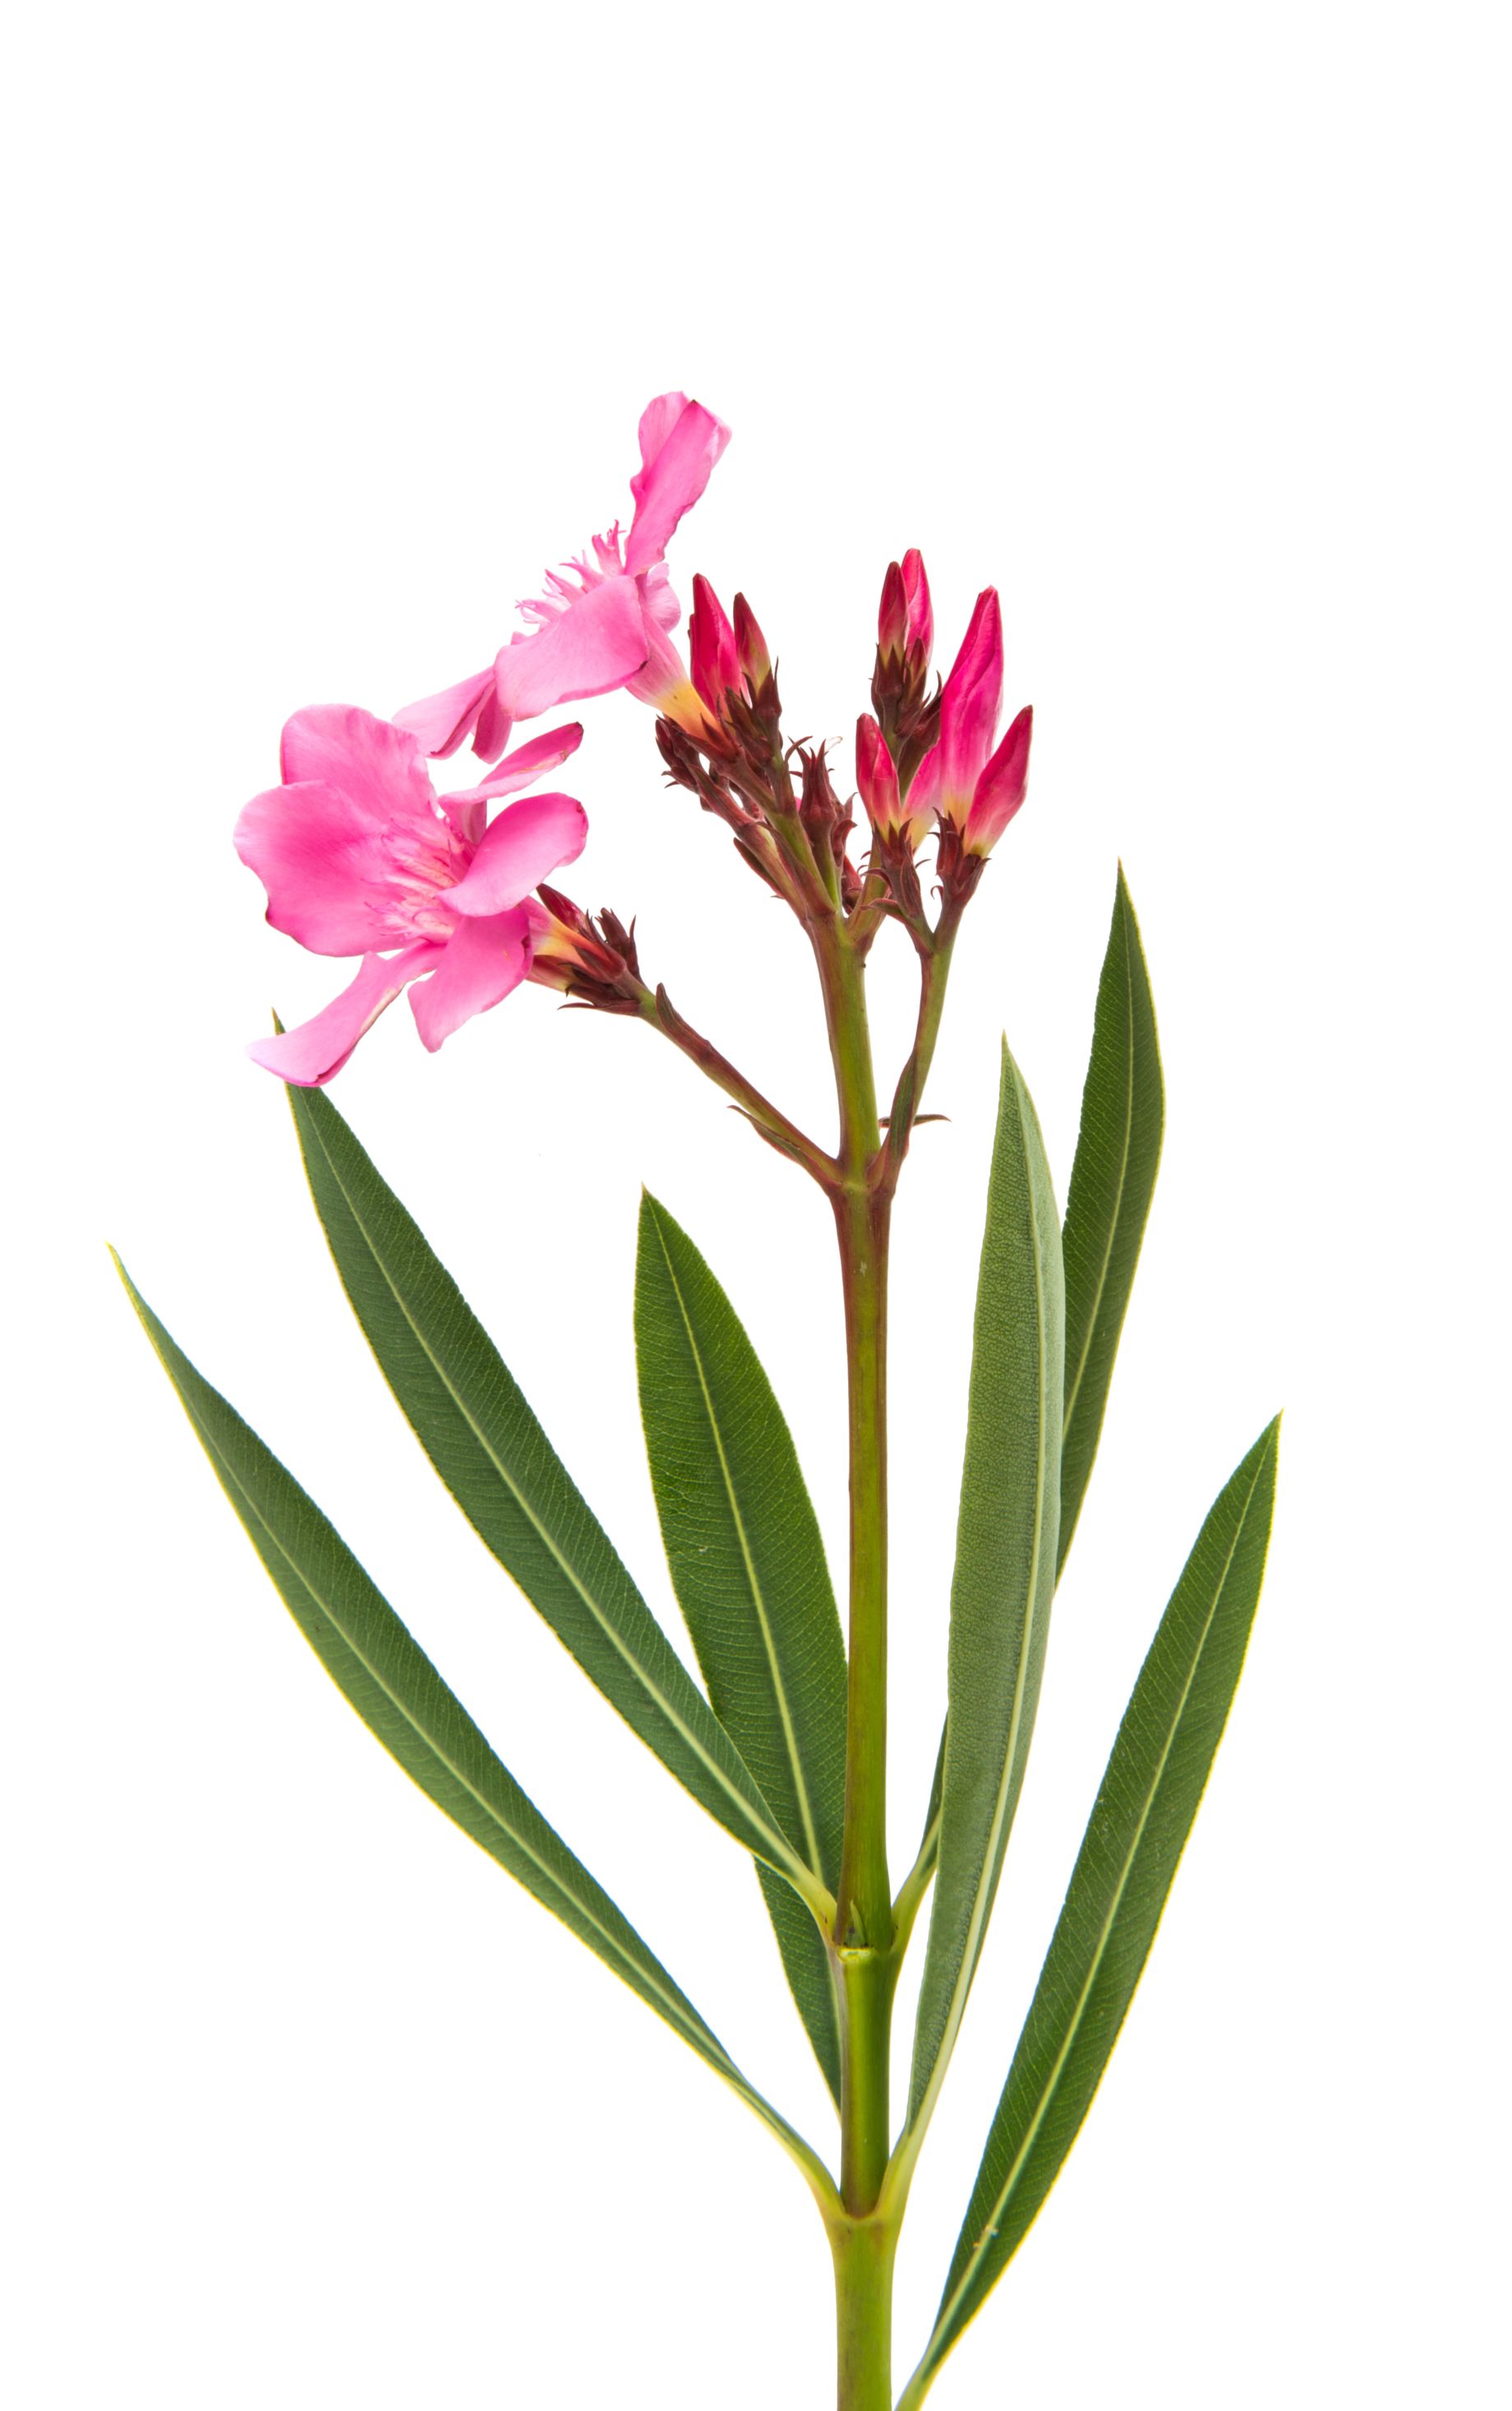 Oleander, Nerium oleander